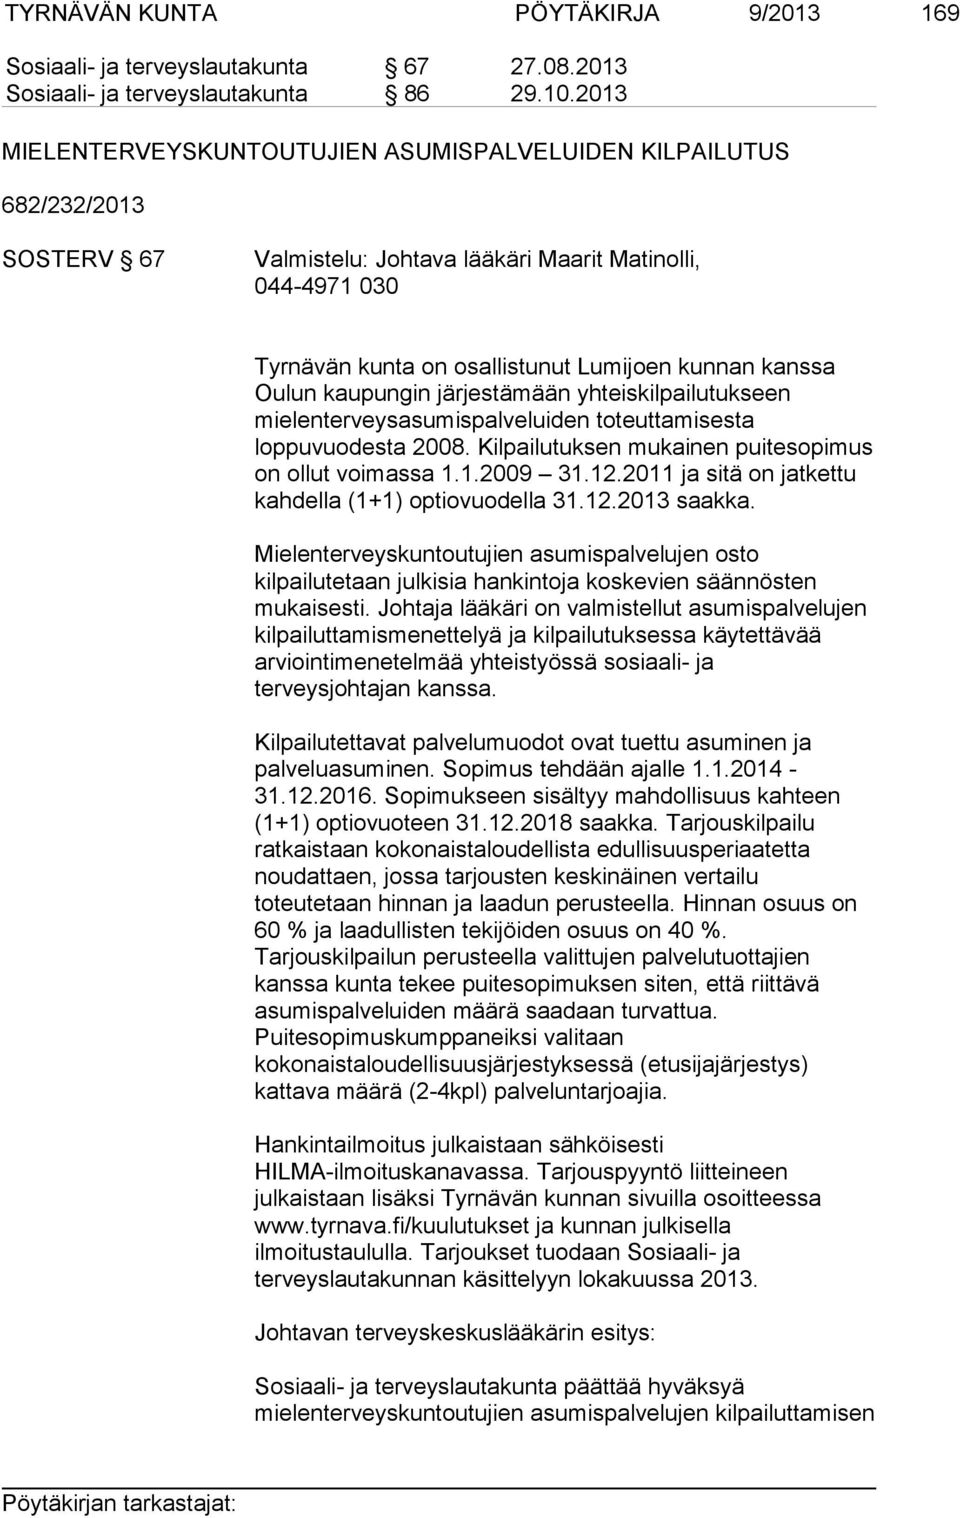 Oulun kaupungin järjestämään yhteiskilpailutukseen mielenterveysasumispalveluiden toteuttamisesta loppuvuodesta 2008. Kilpailutuksen mukainen puitesopimus on ollut voimassa 1.1.2009 31.12.